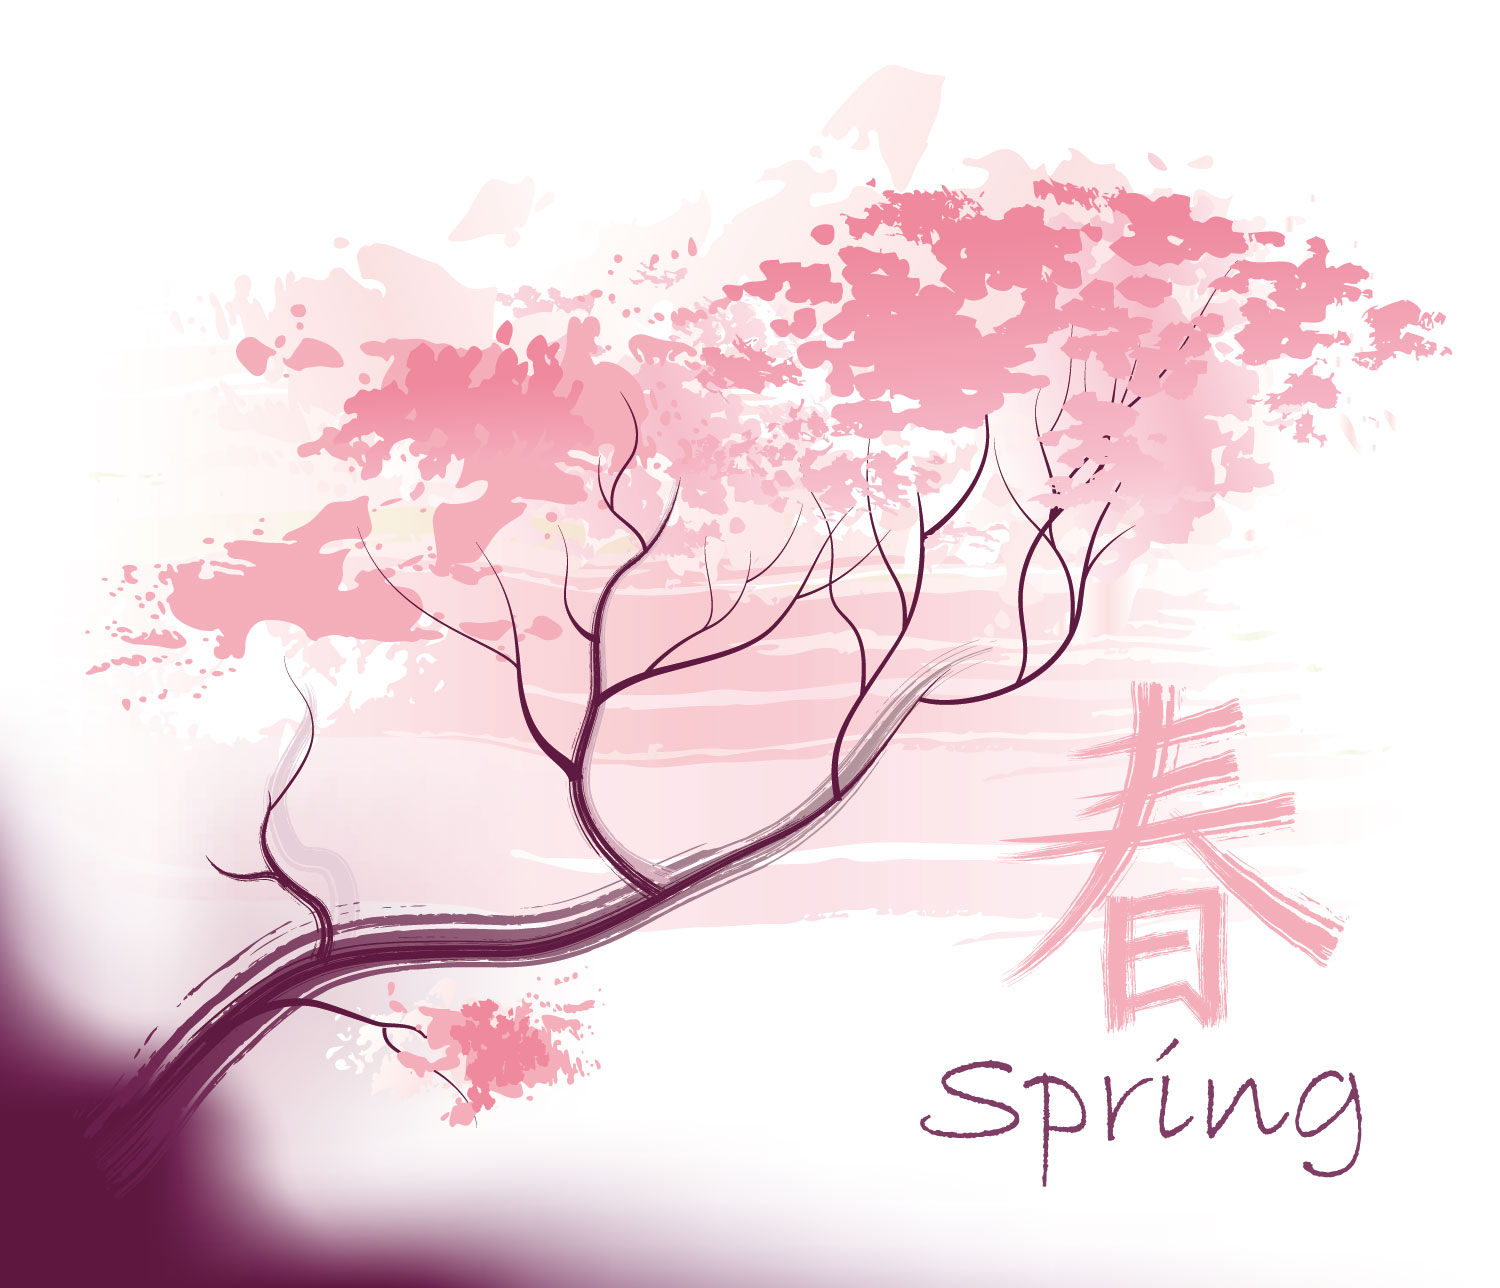 さくら 桜 のイラスト 画像no 061 壁紙 春のイメージ 桜 無料のフリー素材集 百花繚乱